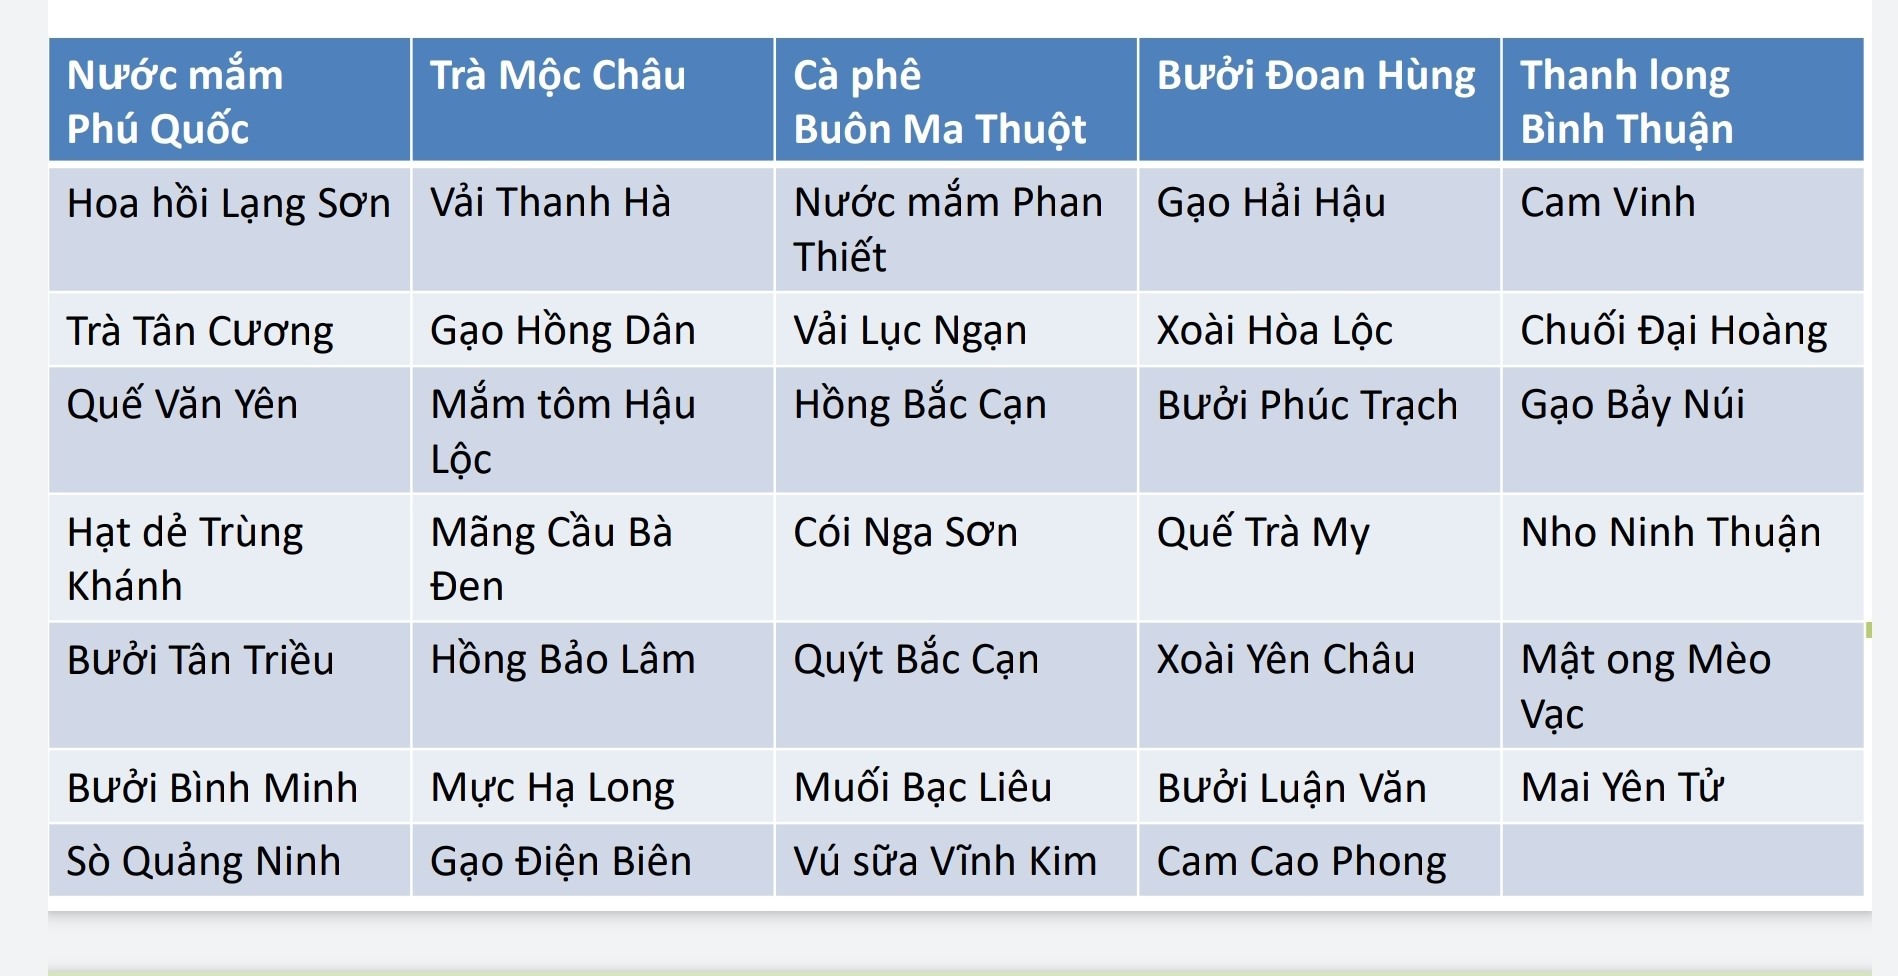 39 chỉ dẫn địa lý của Việt Nam. Nguồn: Bộ Công Thương